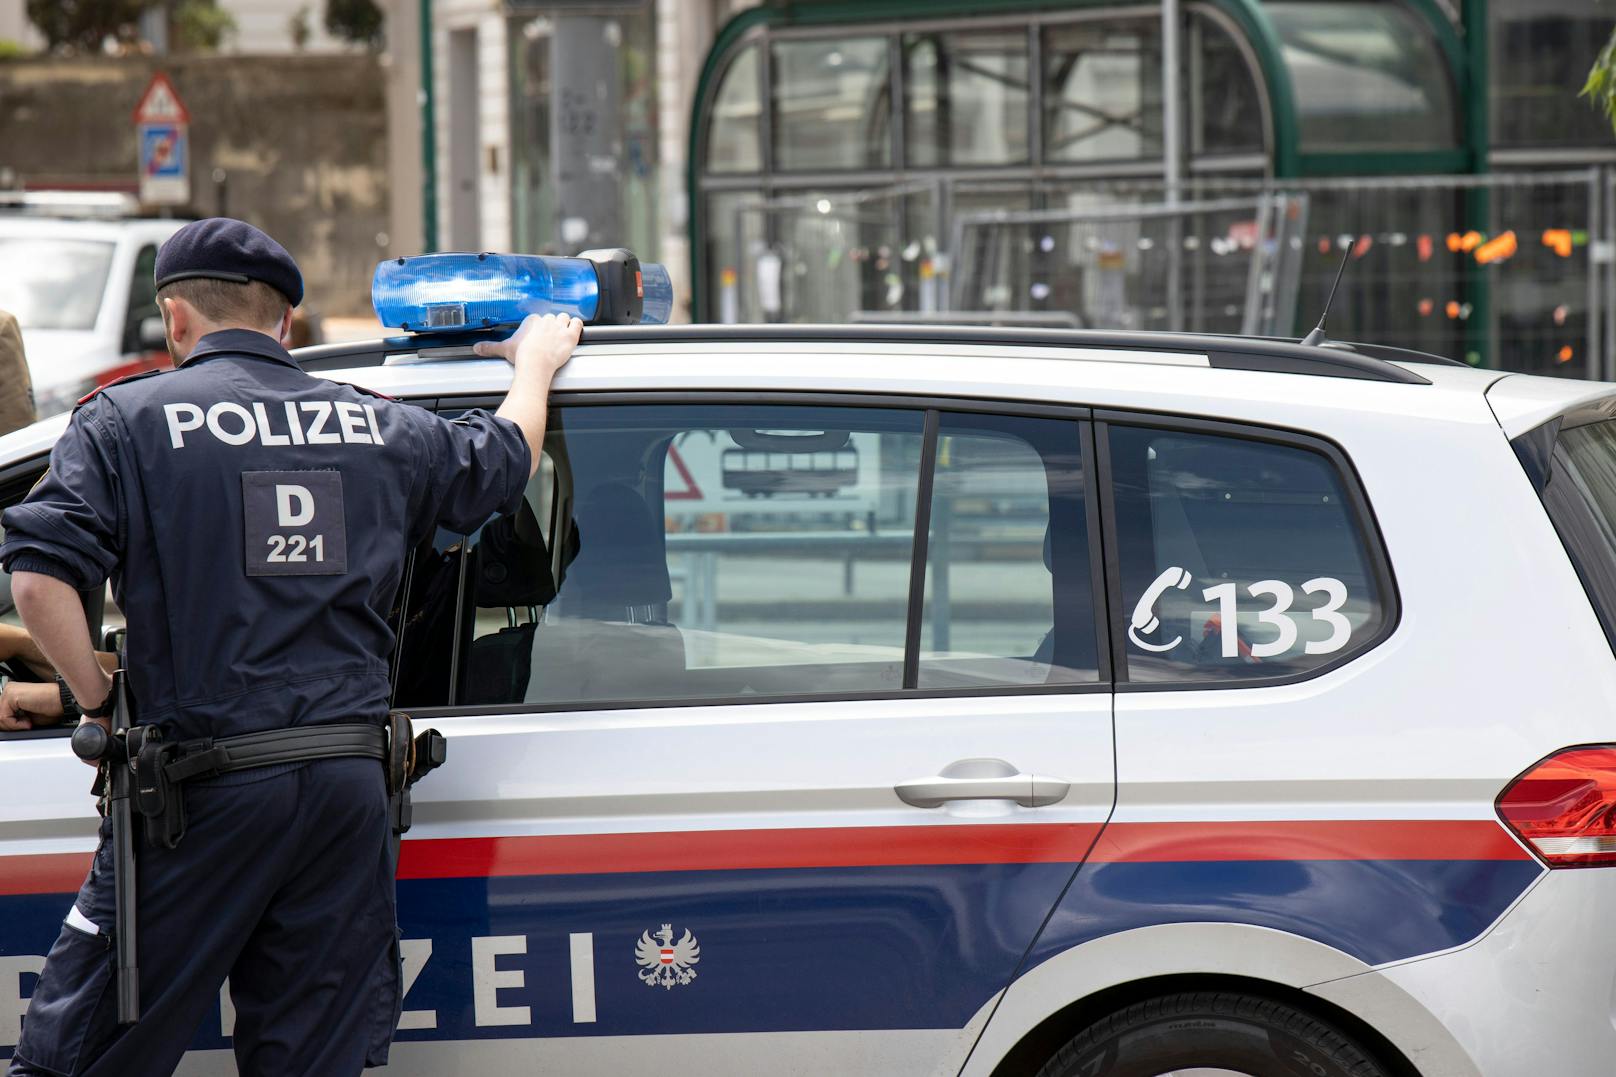 Die Wiener Polizei beobachtet ein erhöhtes Aufkommen an Betrugsversuchen durch "falsche Polizisten".